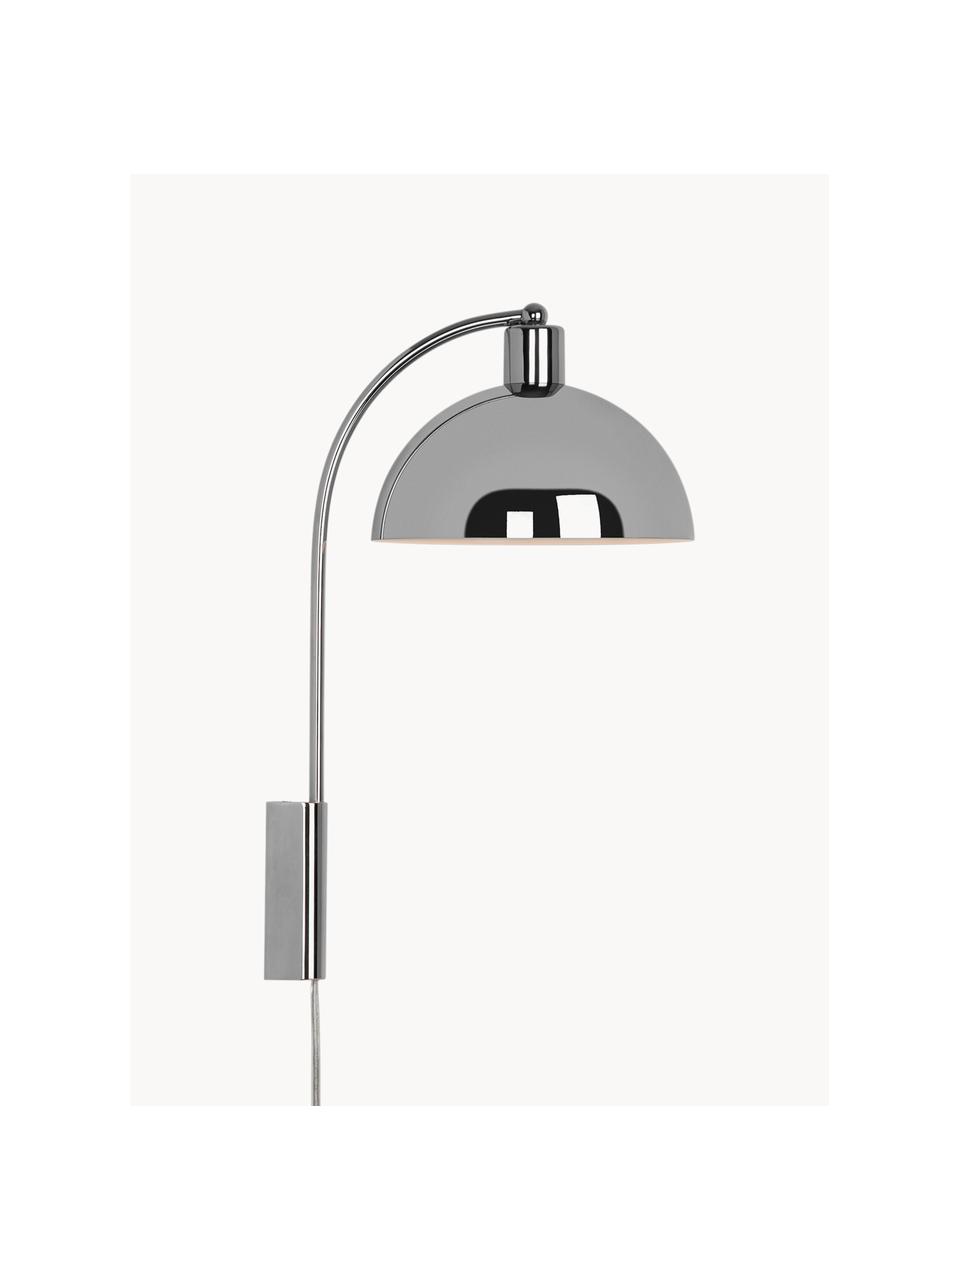 Grote wandlamp Ellen met stekker, Glanzend zilverkleurig, D 26 x H 43 cm